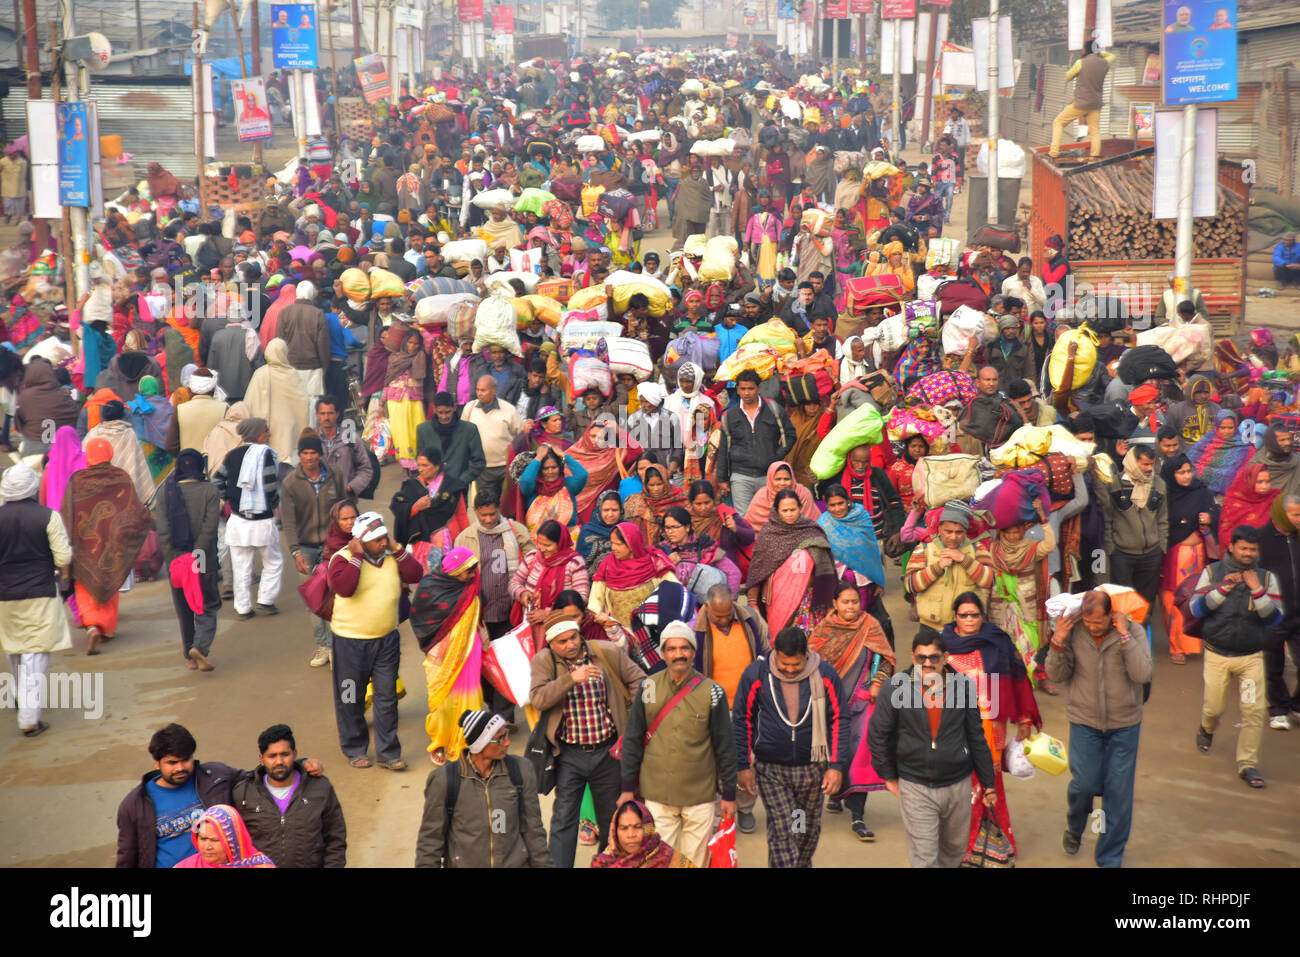 Riesige Menge der Pilger während der pilgerfahrt gesehen. Kumbh Mela, einer der größten Gemeinde des Menschen auf der Erde. 3 crore Leute werden erwartet am Tag der zweiten Shahi Snan am 4. Februar und Arrangements sind entsprechend in Prayagraj gemacht. Stockfoto